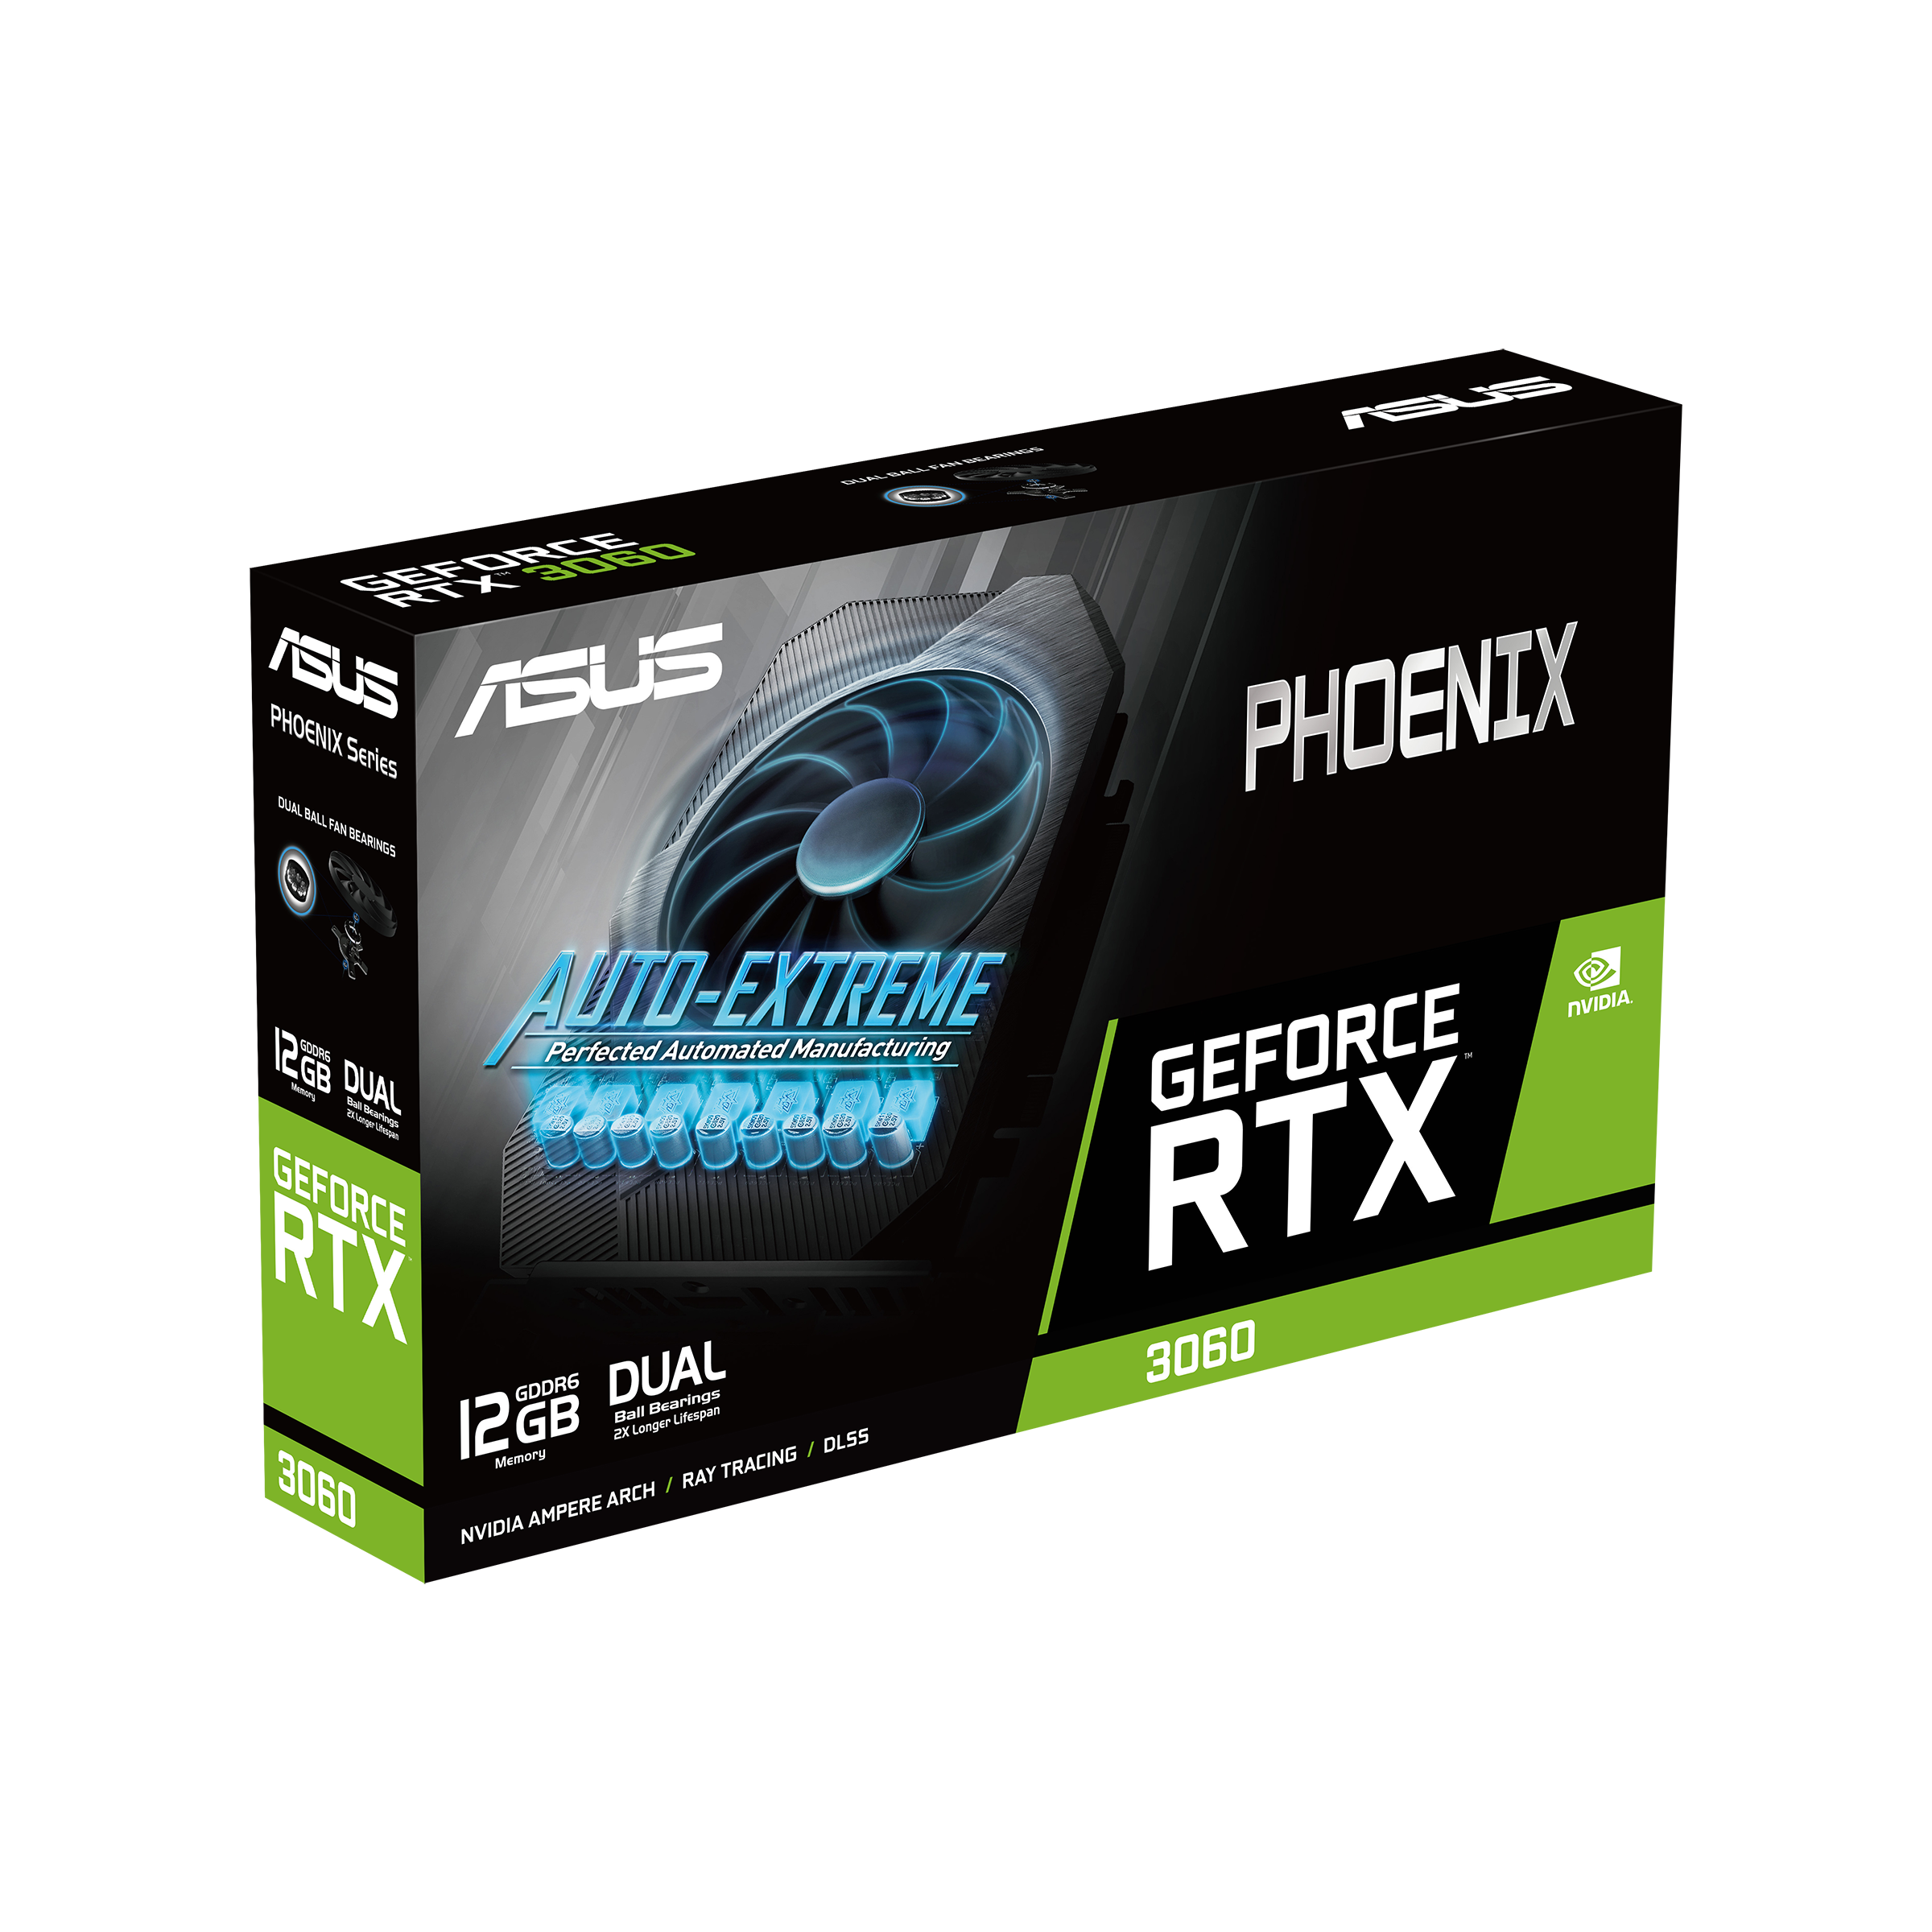 Immagine pubblicata in relazione al seguente contenuto: ASUS introduce la video card GeForce RTX 3060 Phoenix 12GB GDDR6 | Nome immagine: news31864_ASUS-GeForce-RTX-3060-Phoenix_3.png